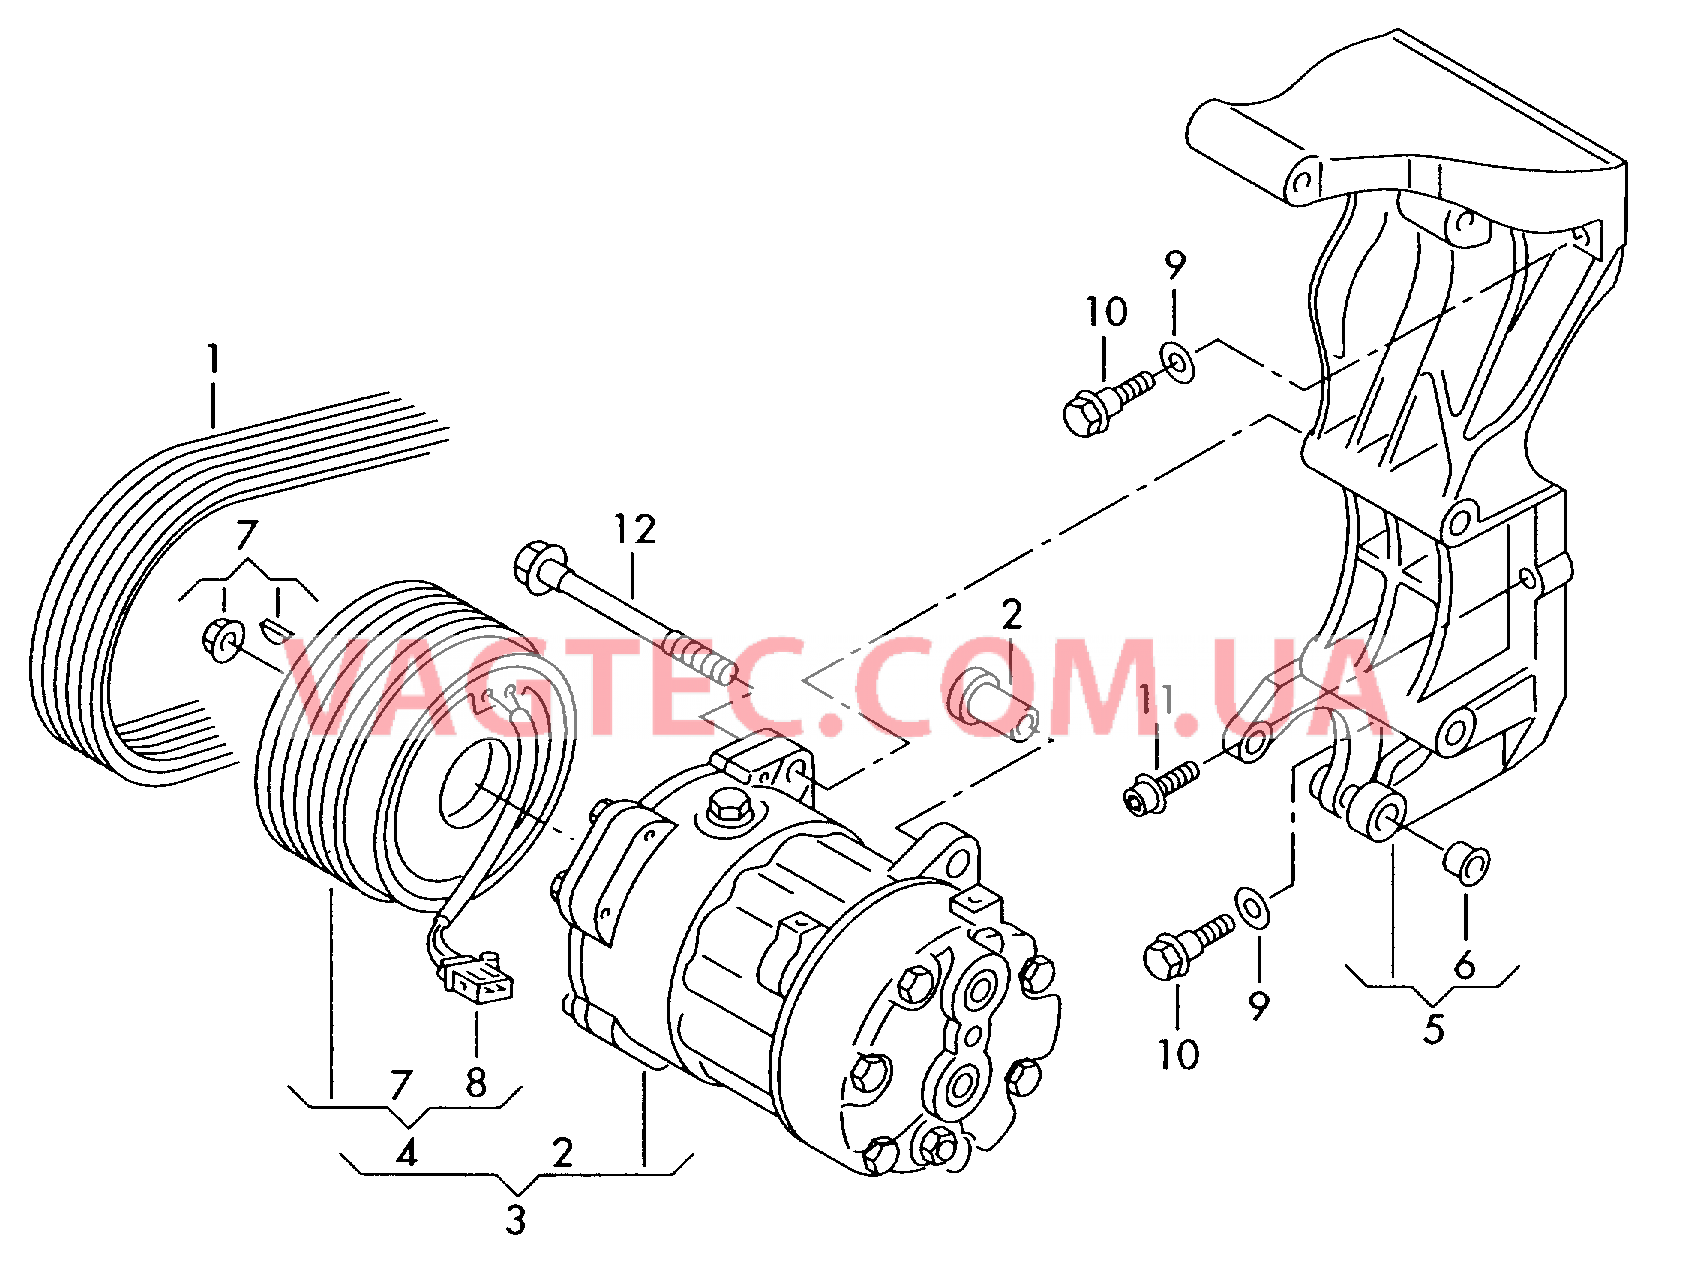 Компрессор климатической уст. Электромагнитная муфта Кронштейн генератора и компрессора кондиционера  для VOLKSWAGEN Transporter 2007-1